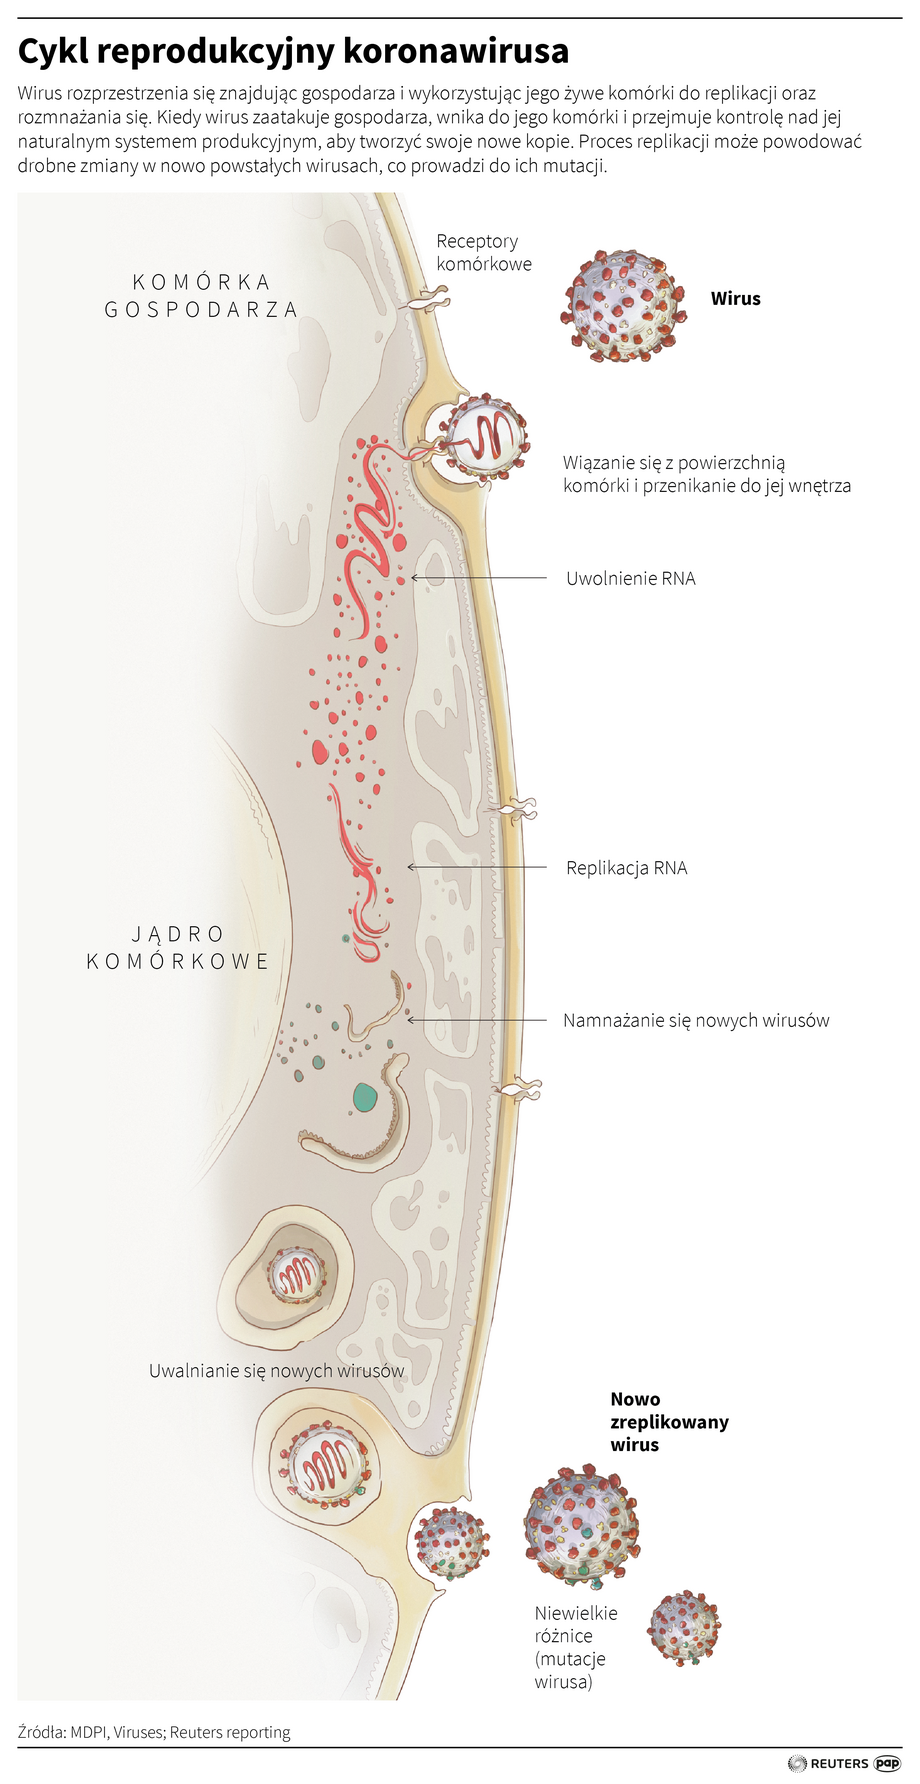 Cykl reprodukcyjny koronawirusa